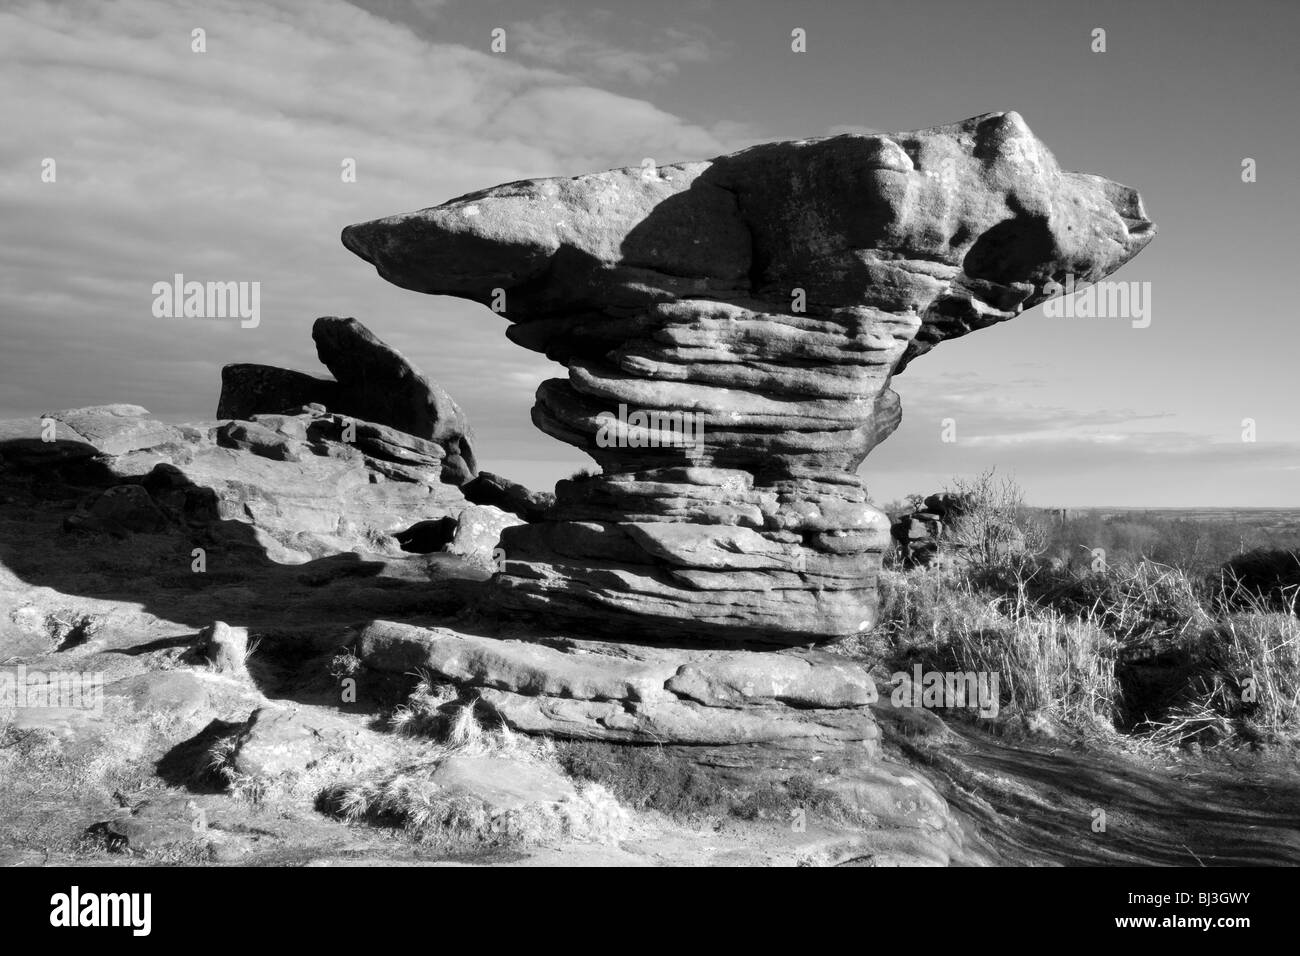 Die Elemente haben seltsame Formationen in der Mühlstein Körnung bei Brimham Rocks in Nidderdale, North Yorkshire geschnitzt. Stockfoto